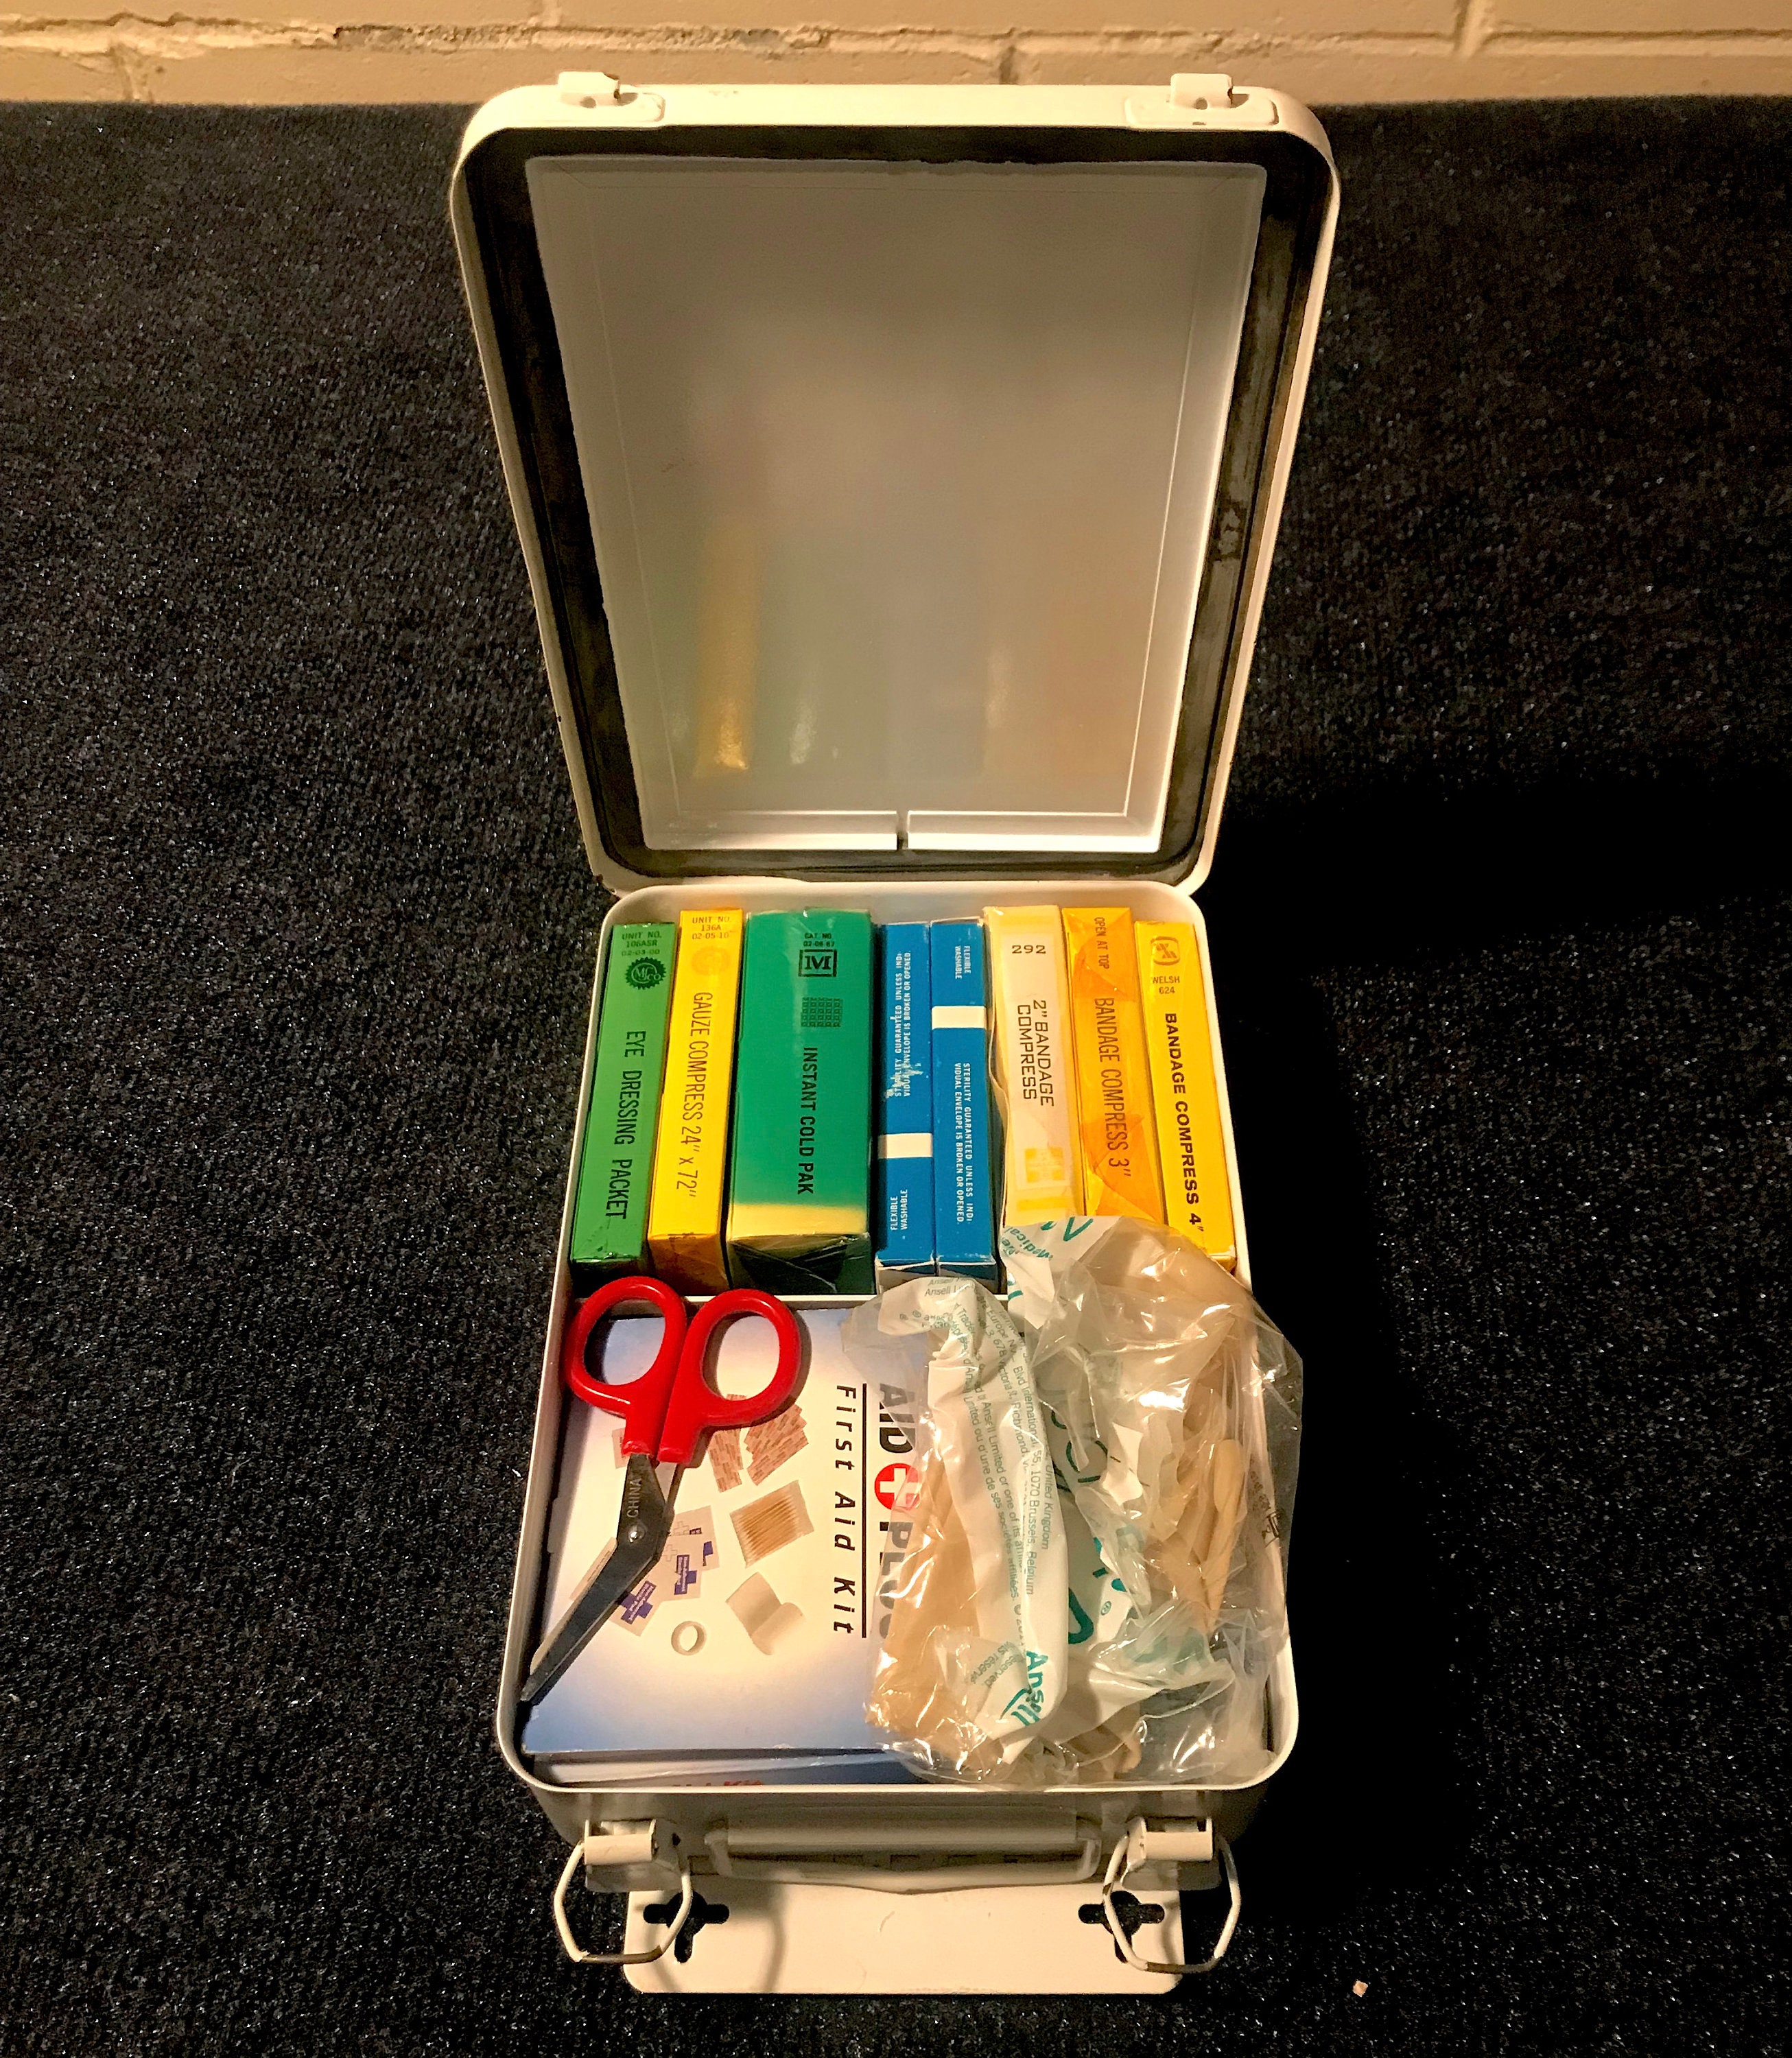 Healeved Box storage basket nurse station organizer first aid cabinet First  Aid Medicine Organizer car first aid container First Aid Case plastic